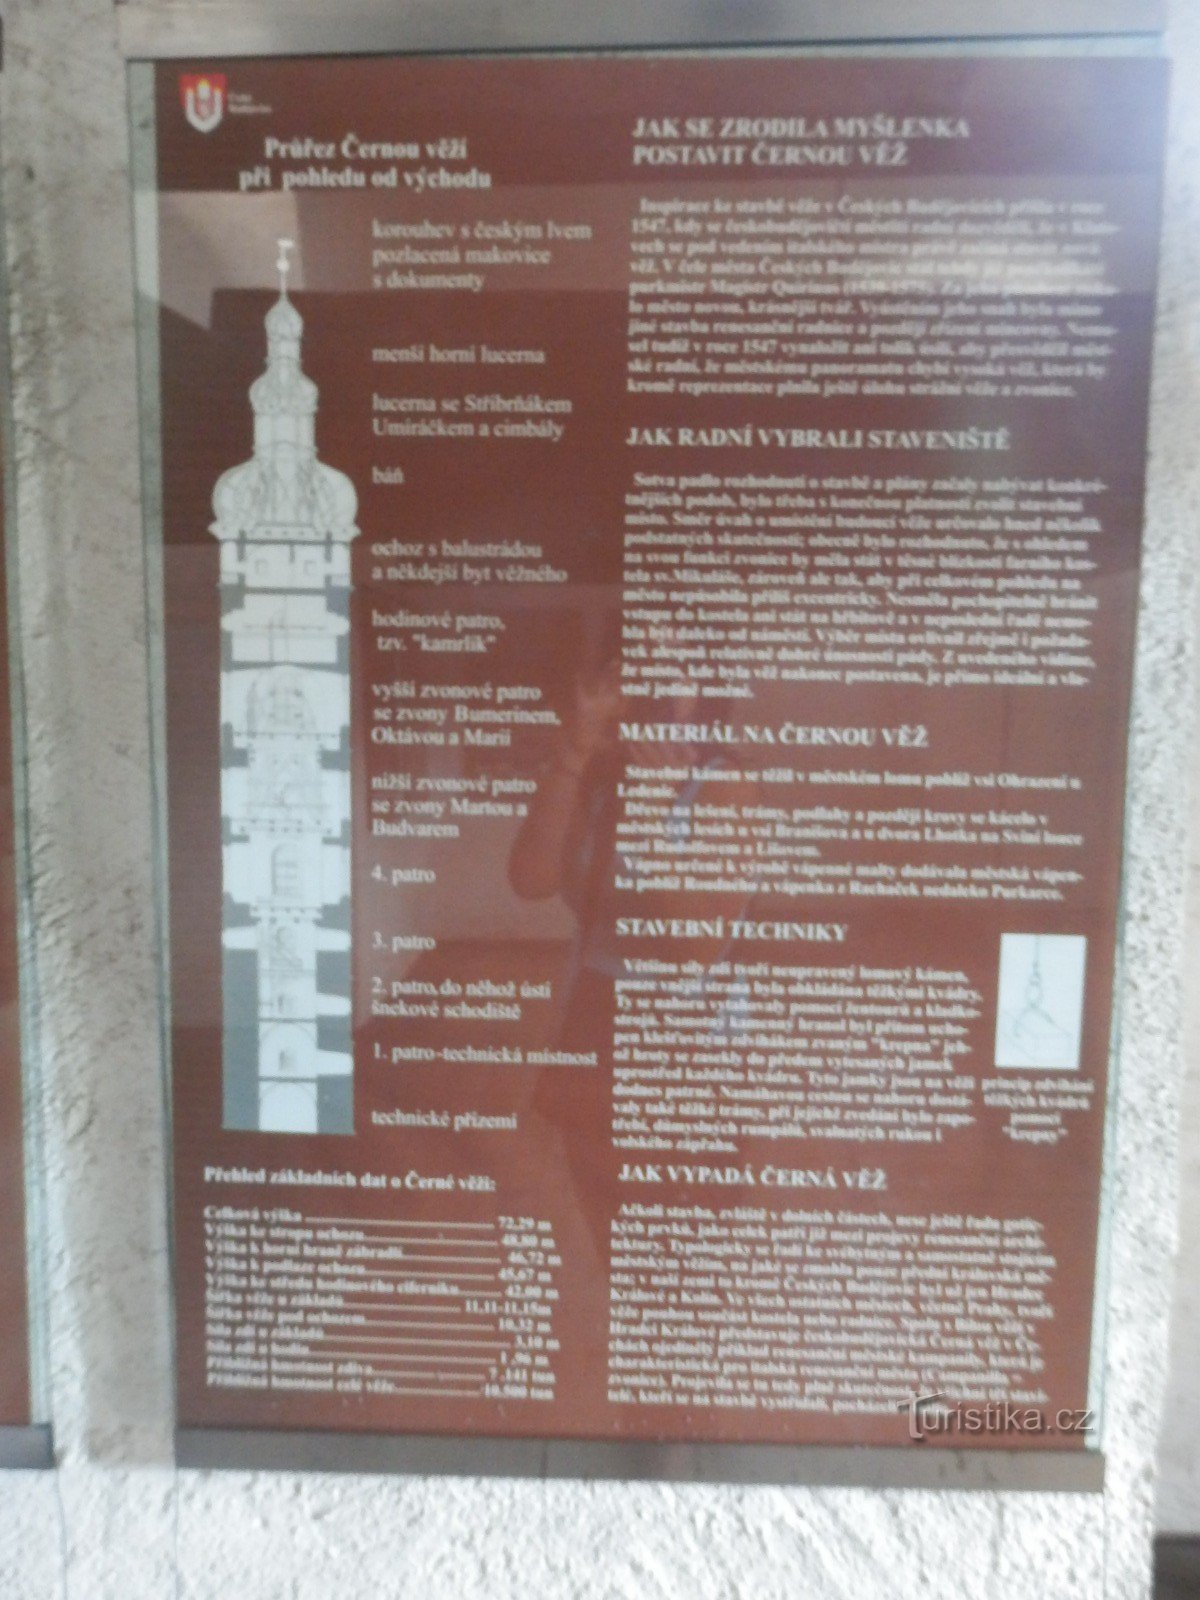 Torre Nera - České Budějovice